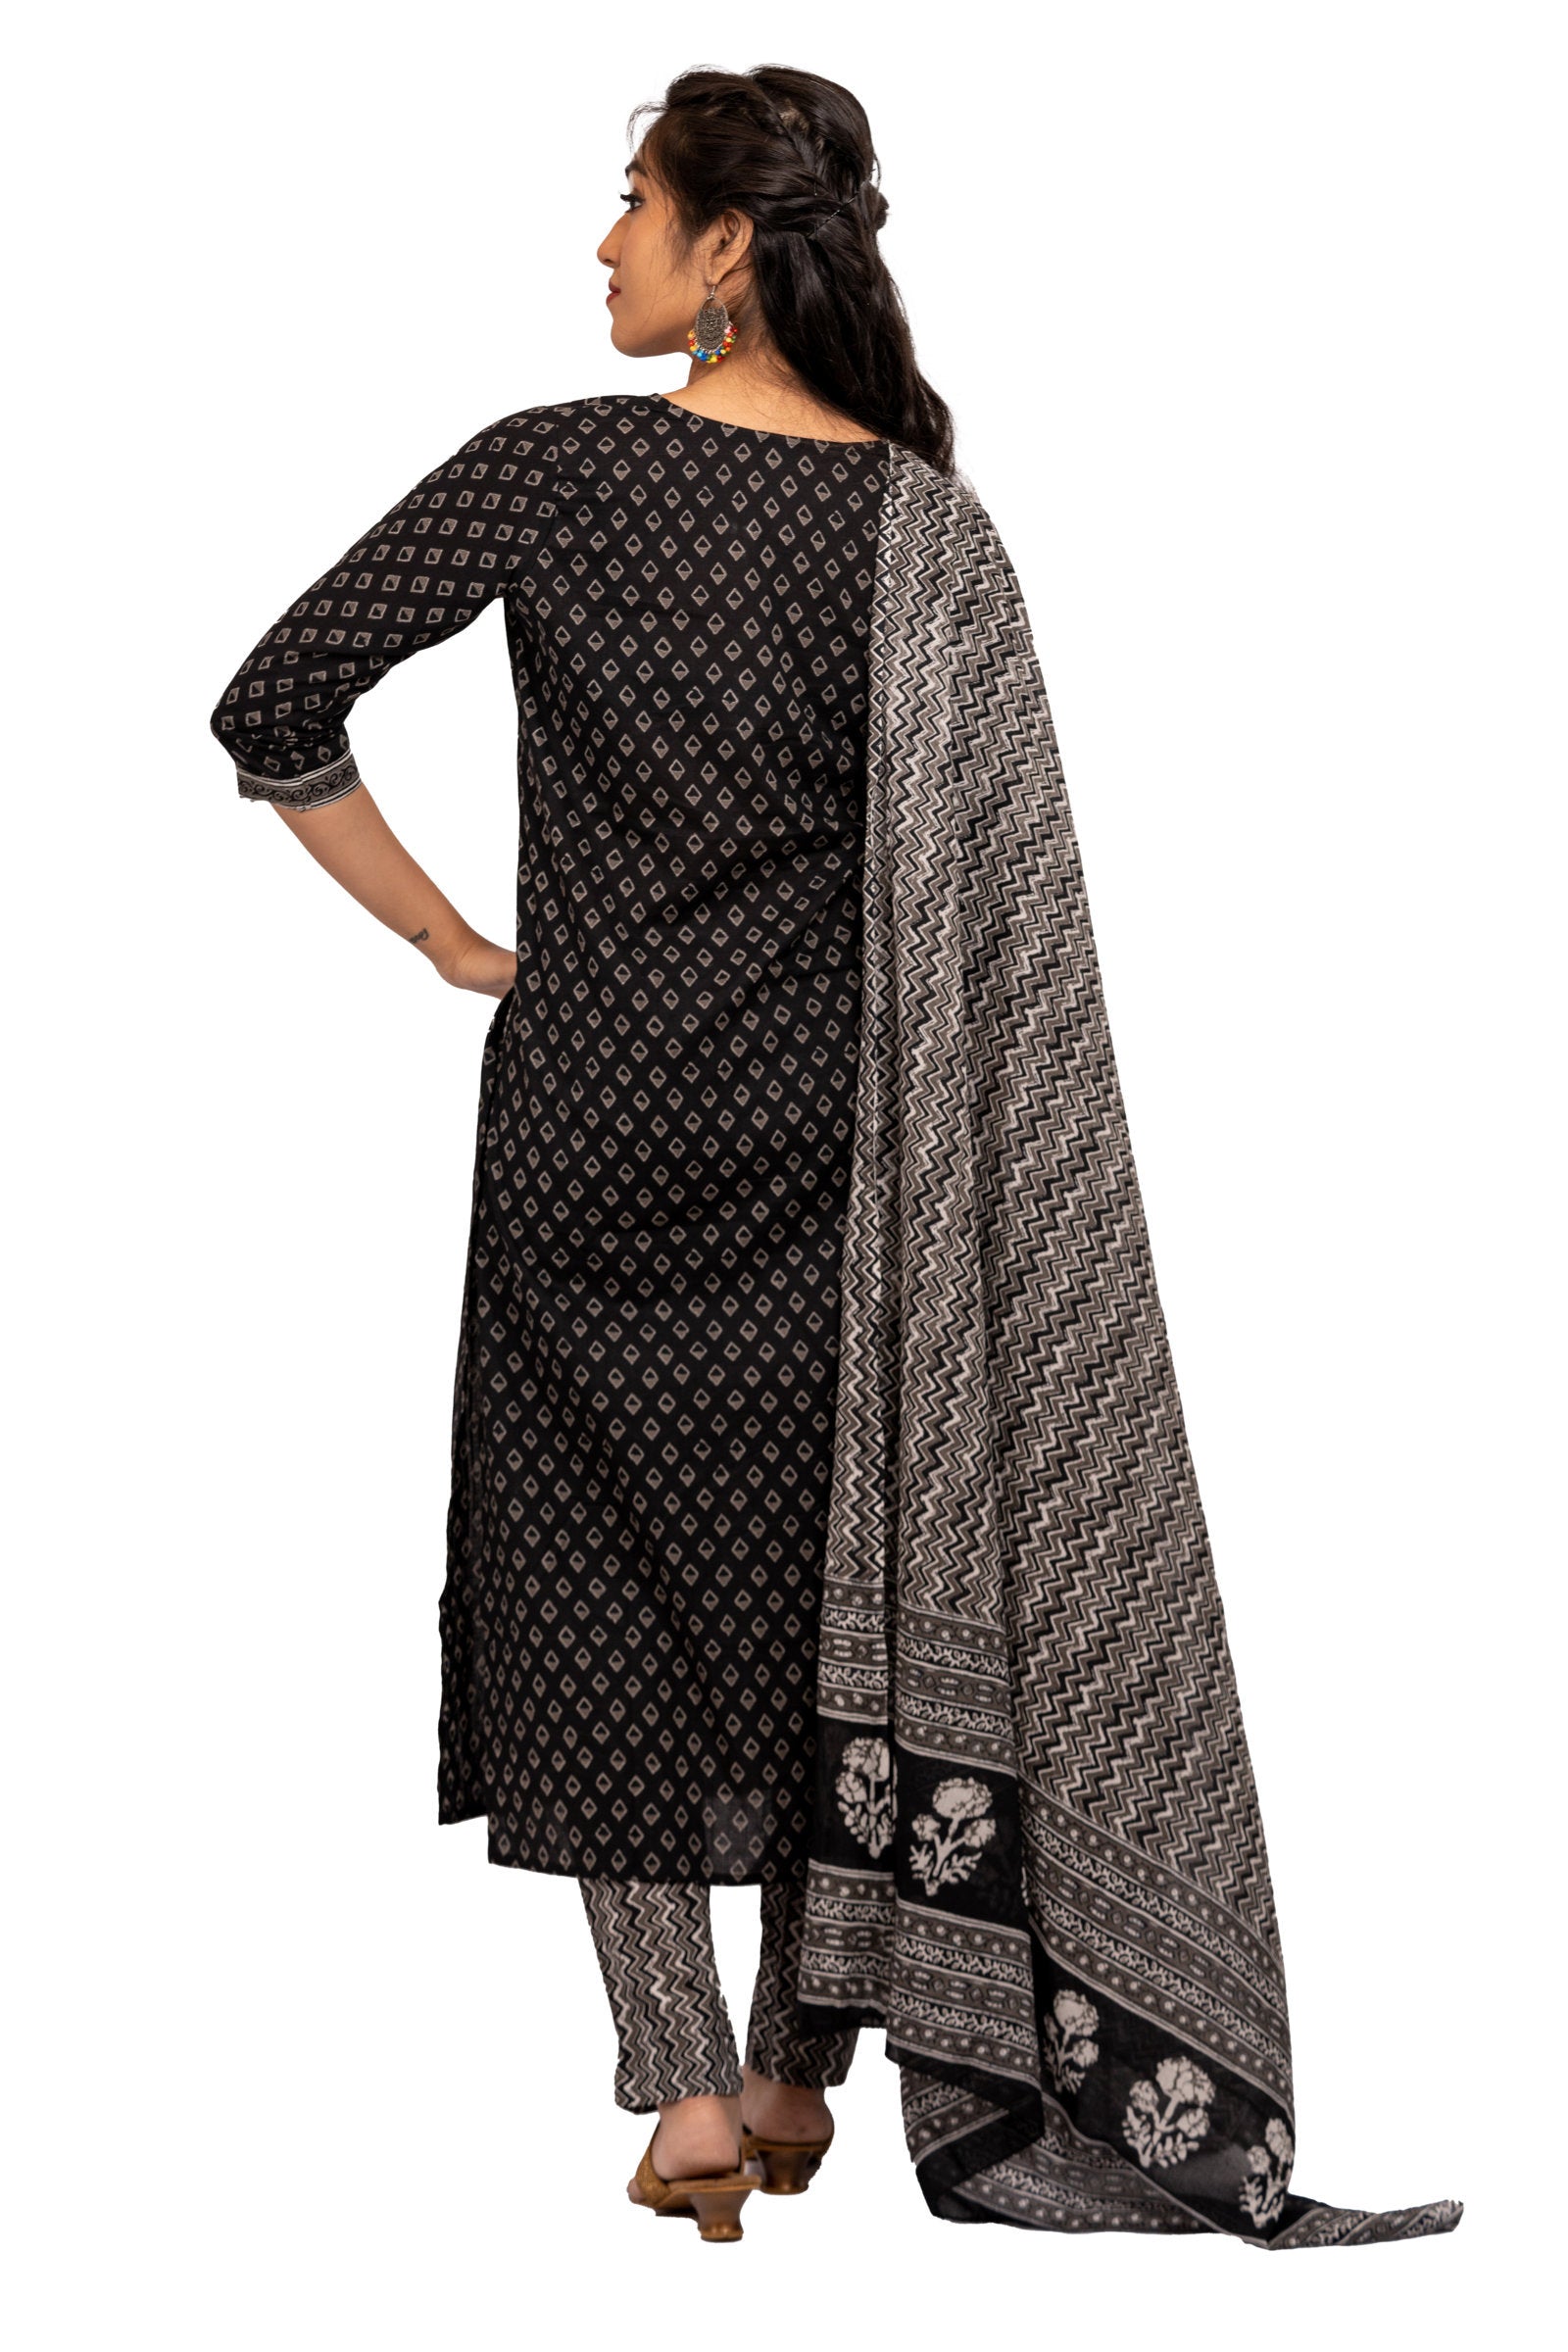 3 Piece Salwar - 100% Cotton black salwar with grey prints. Black 2 metre long dupatta and pants with grey ikkat design and floral print